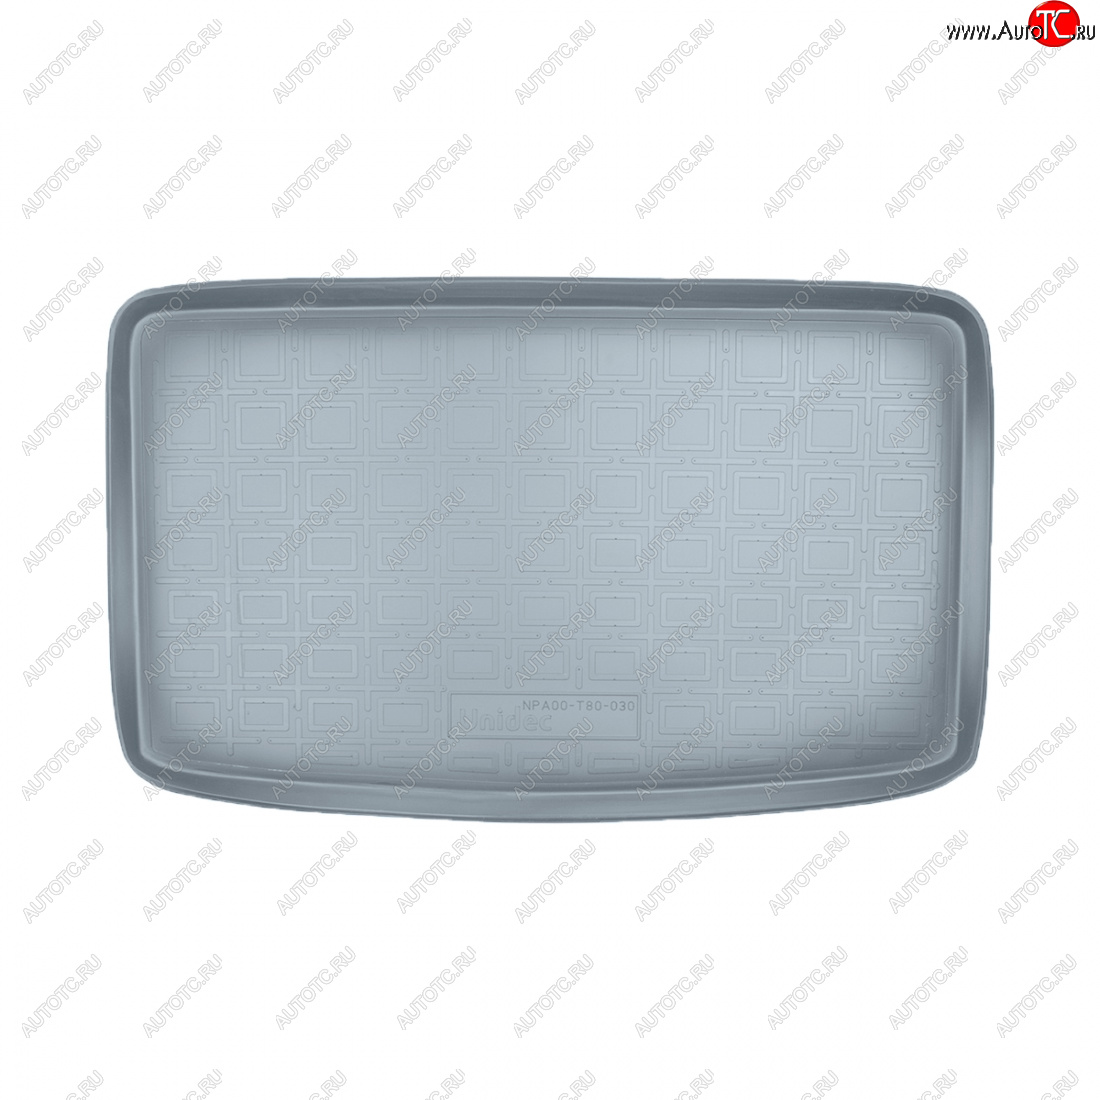 1 579 р. Коврик багажника Norplast Unidec (7 мест разложенный 3-й ряд)  Seat Alhambra  7N (2010-2020) (серый)